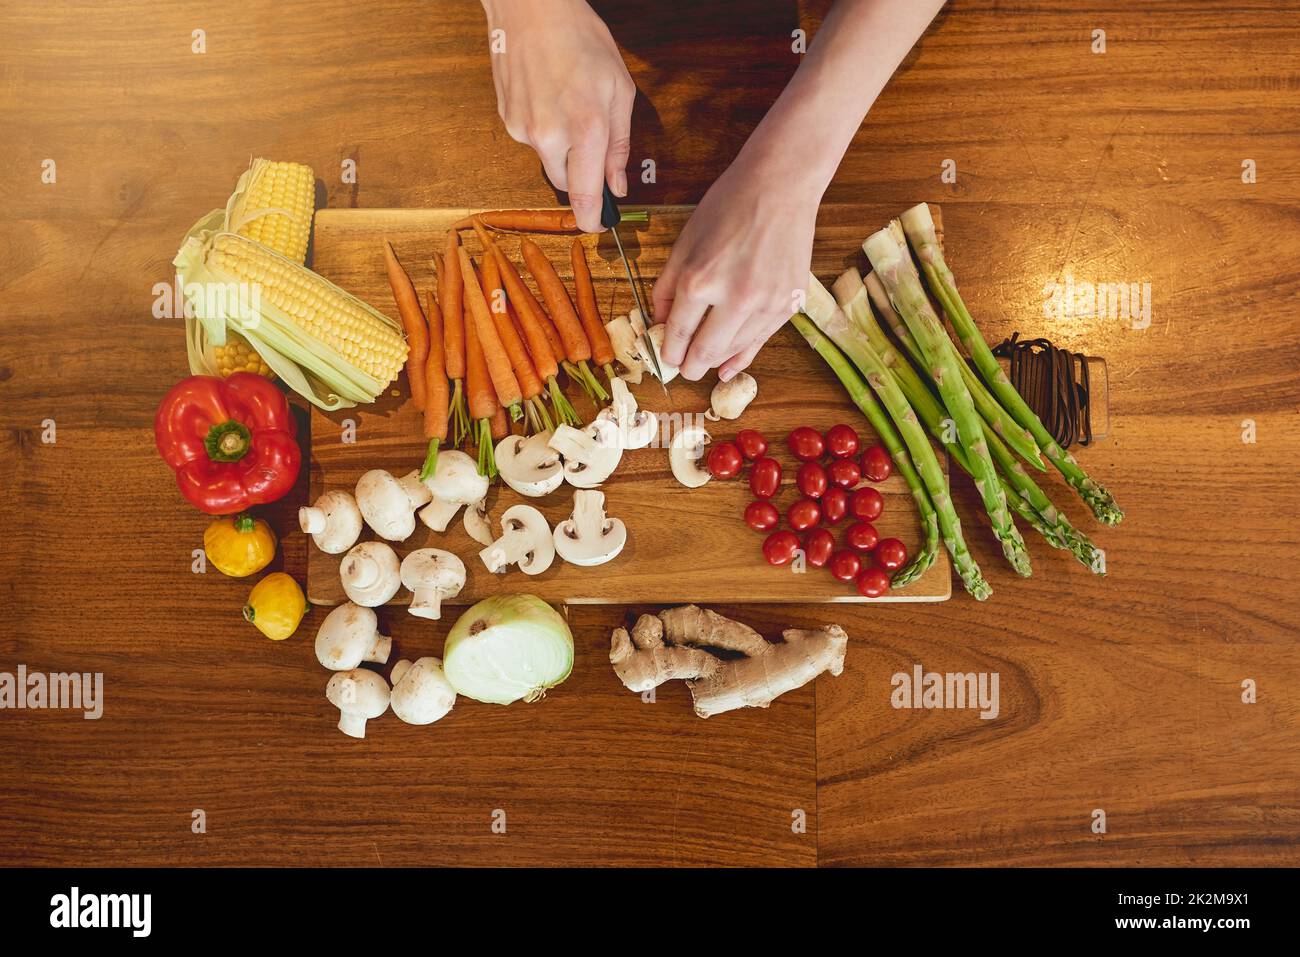 Manger vert, manger propre. Photo en grand angle d'une femme qui coupe une variété de légumes sains sur une planche à découper. Banque D'Images